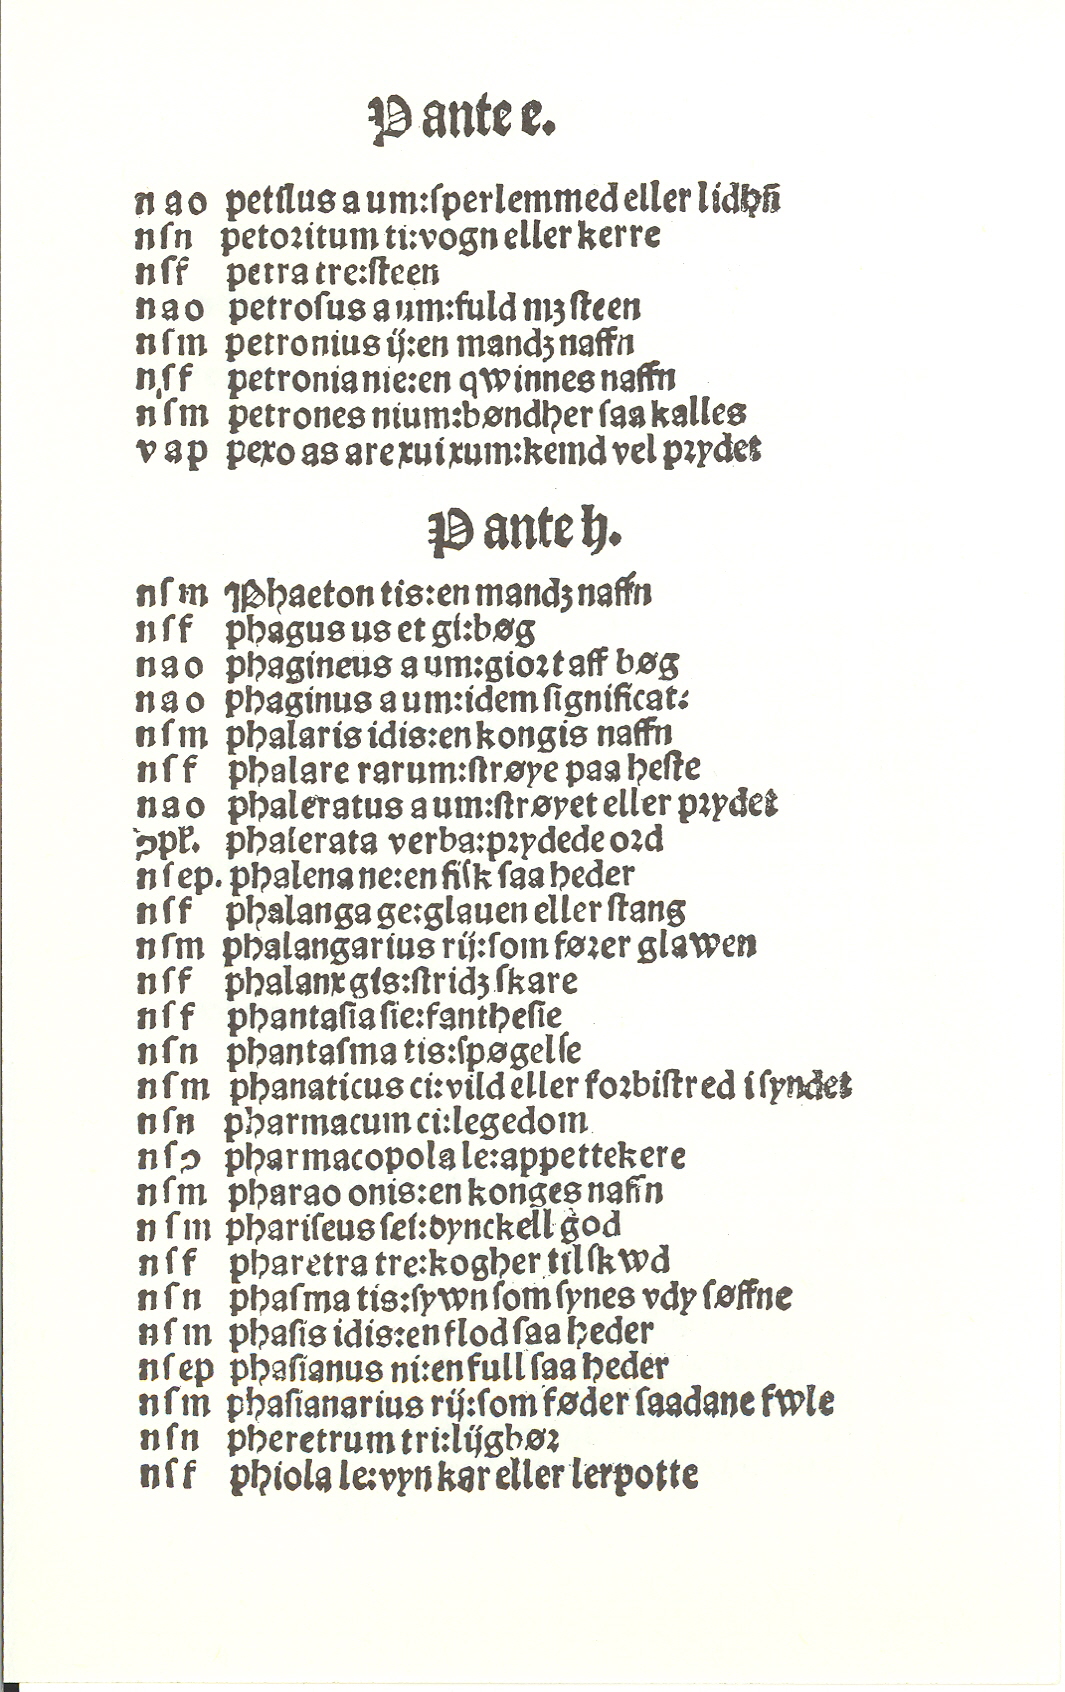 Pedersen 1510, Side: 274